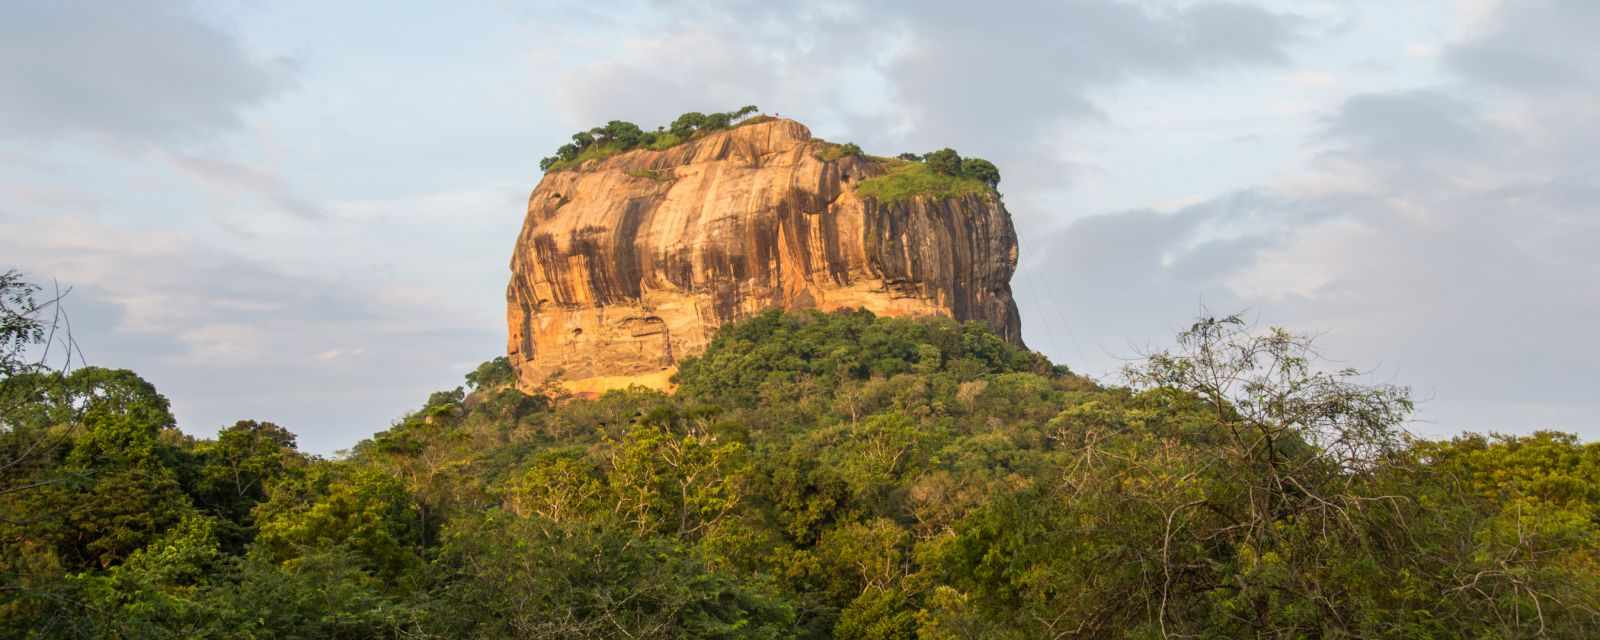 Climbing Sigiriya Rock the Lion Rock and Fortress in Sri Lanka